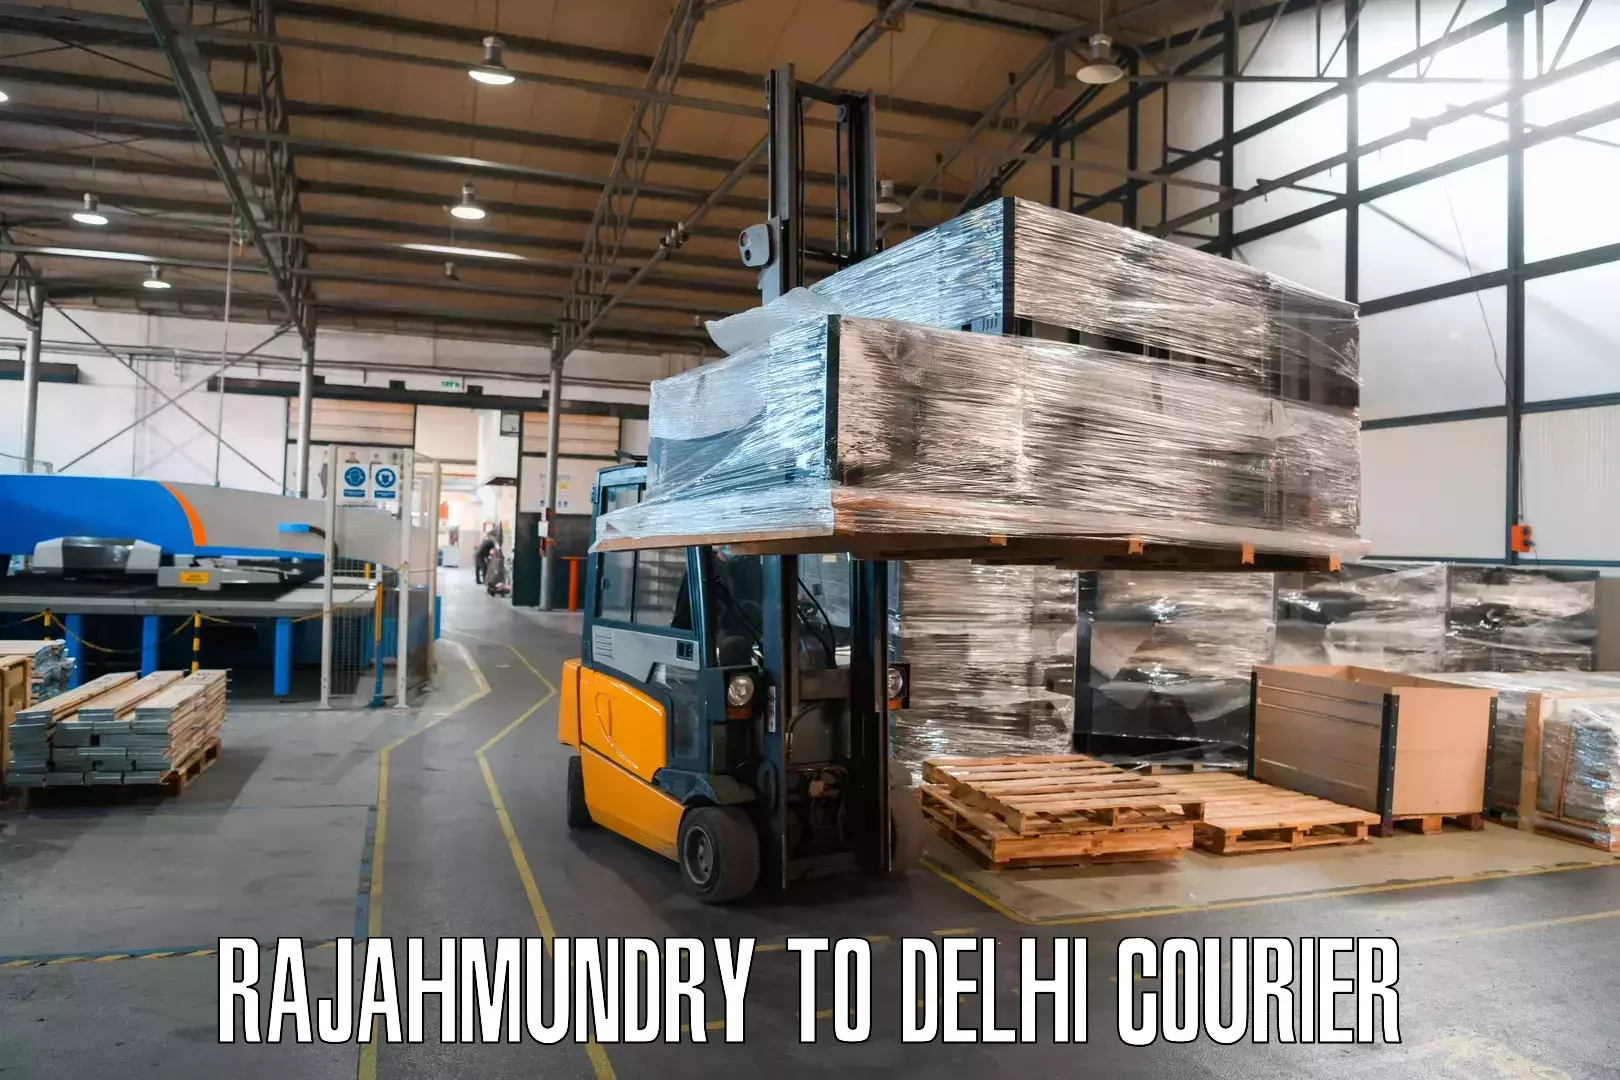 Global parcel delivery Rajahmundry to Delhi Technological University DTU